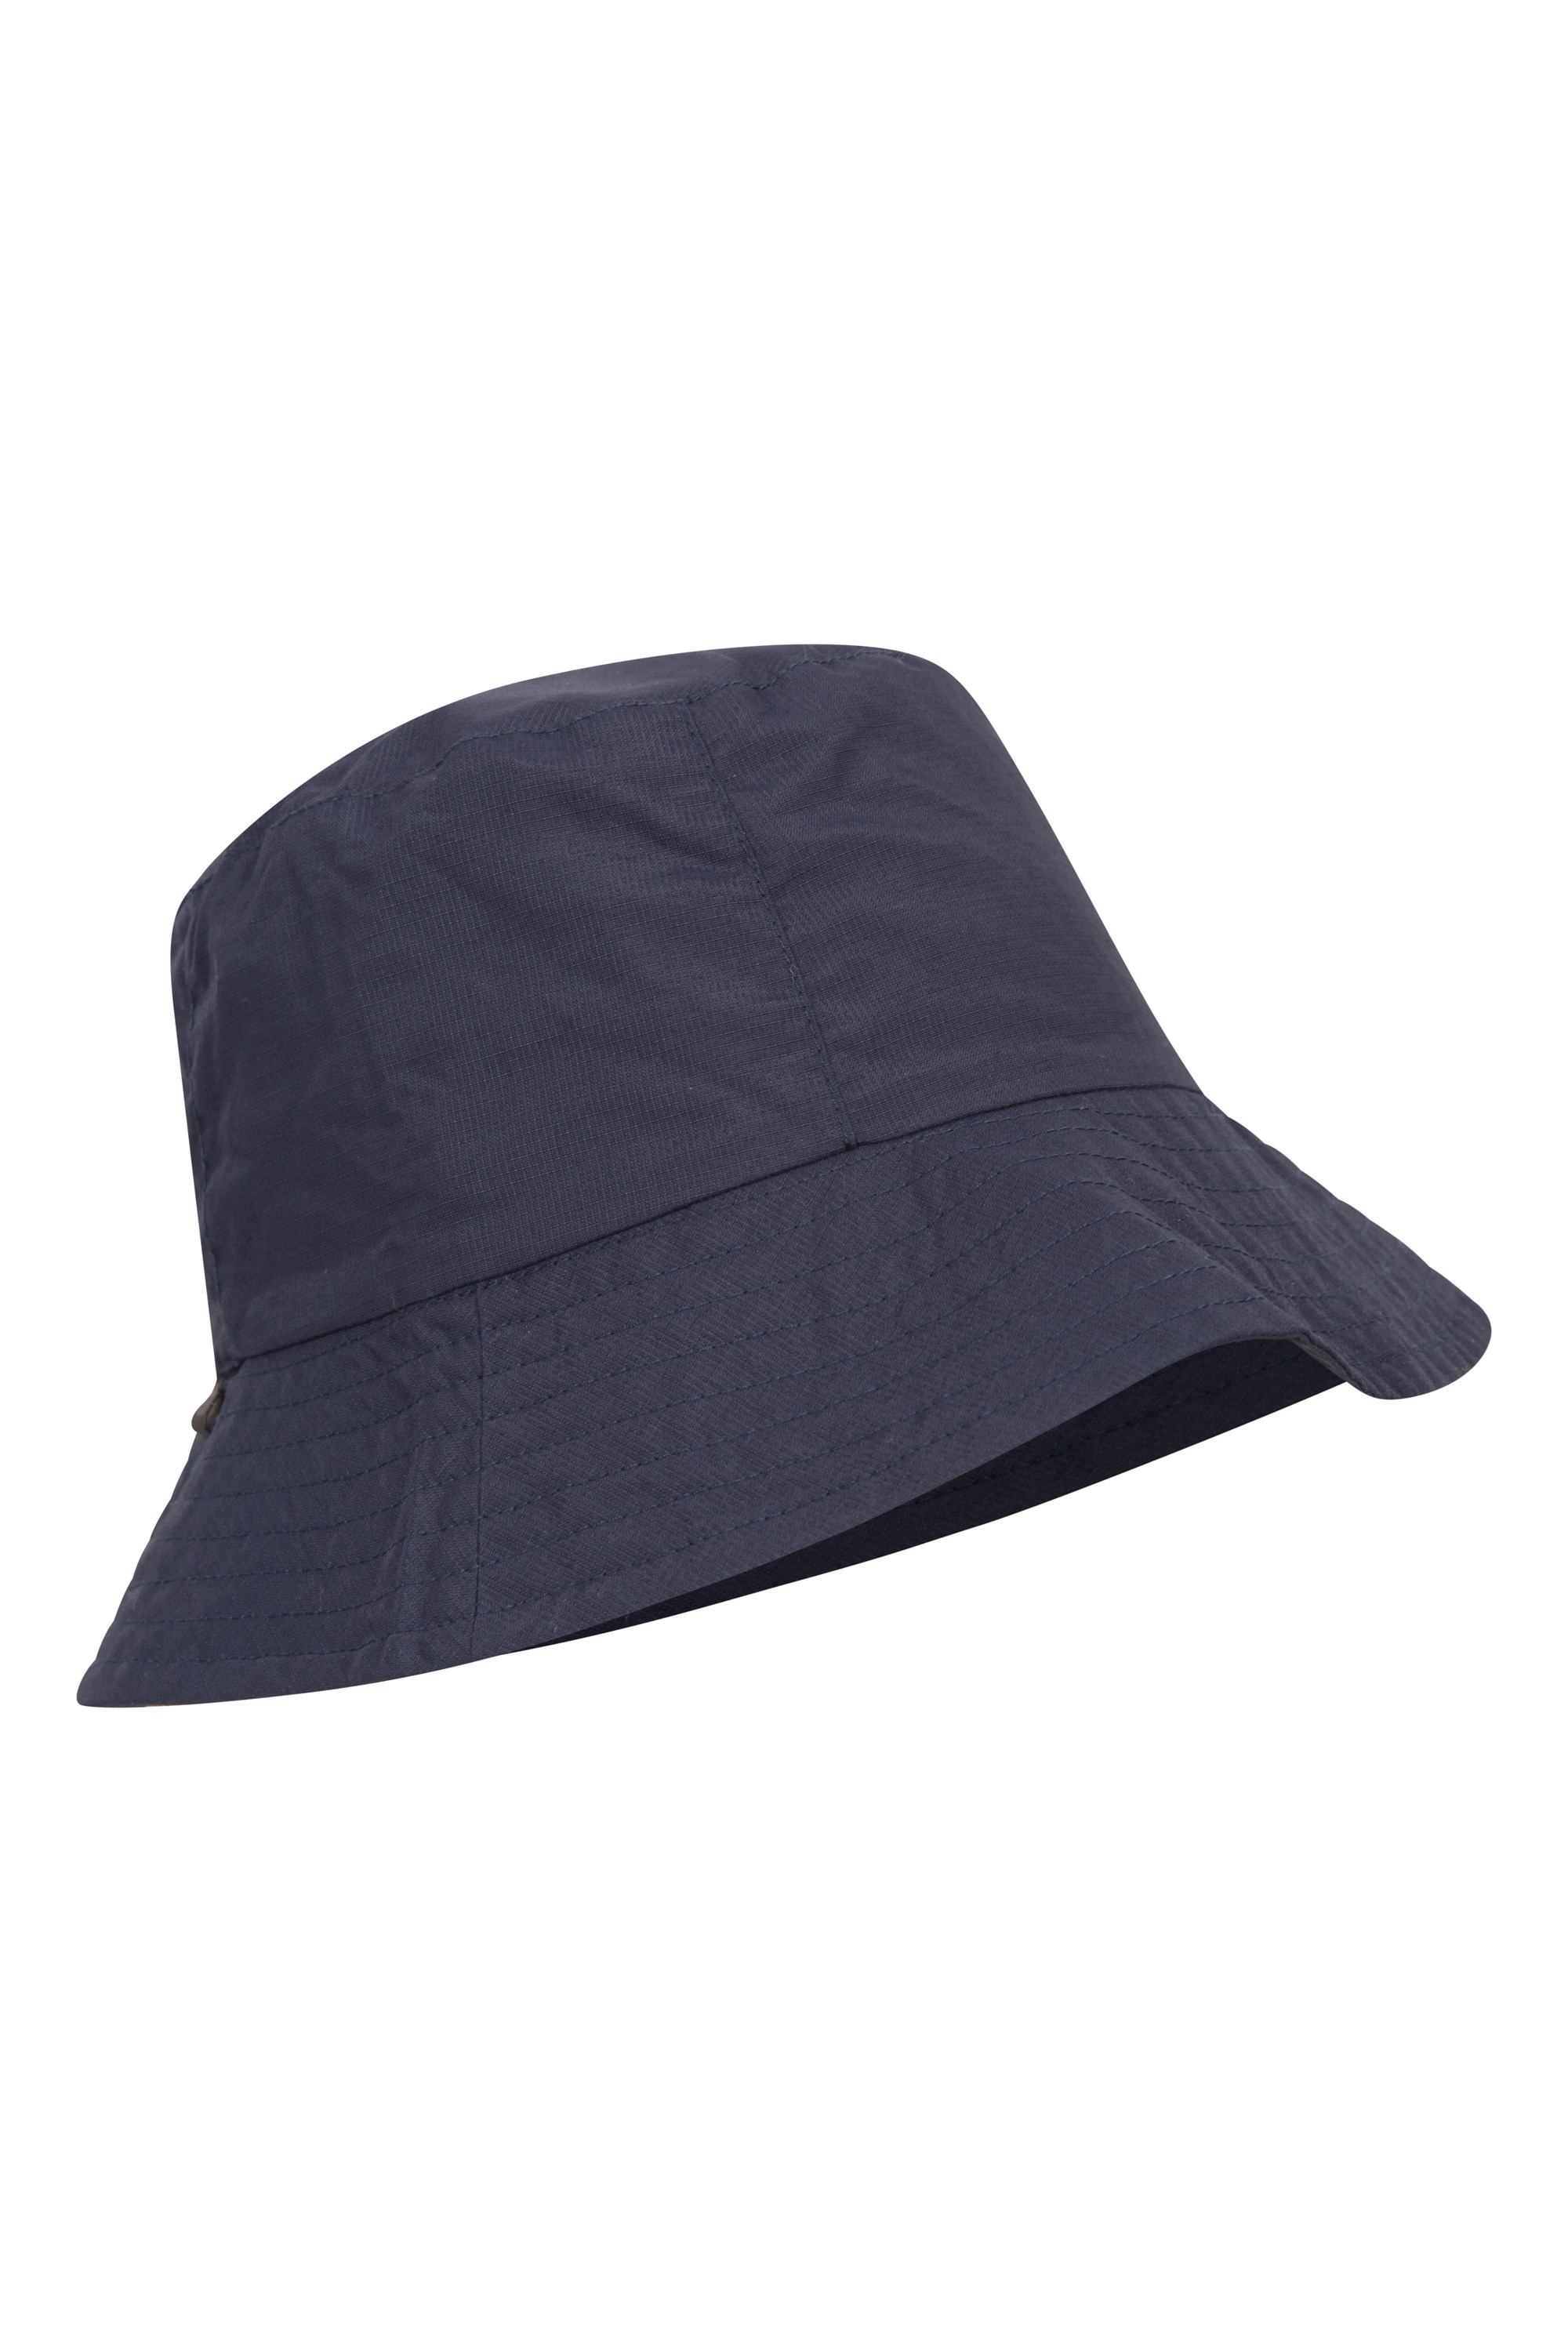 Womens Packable Bucket Hat - Navy